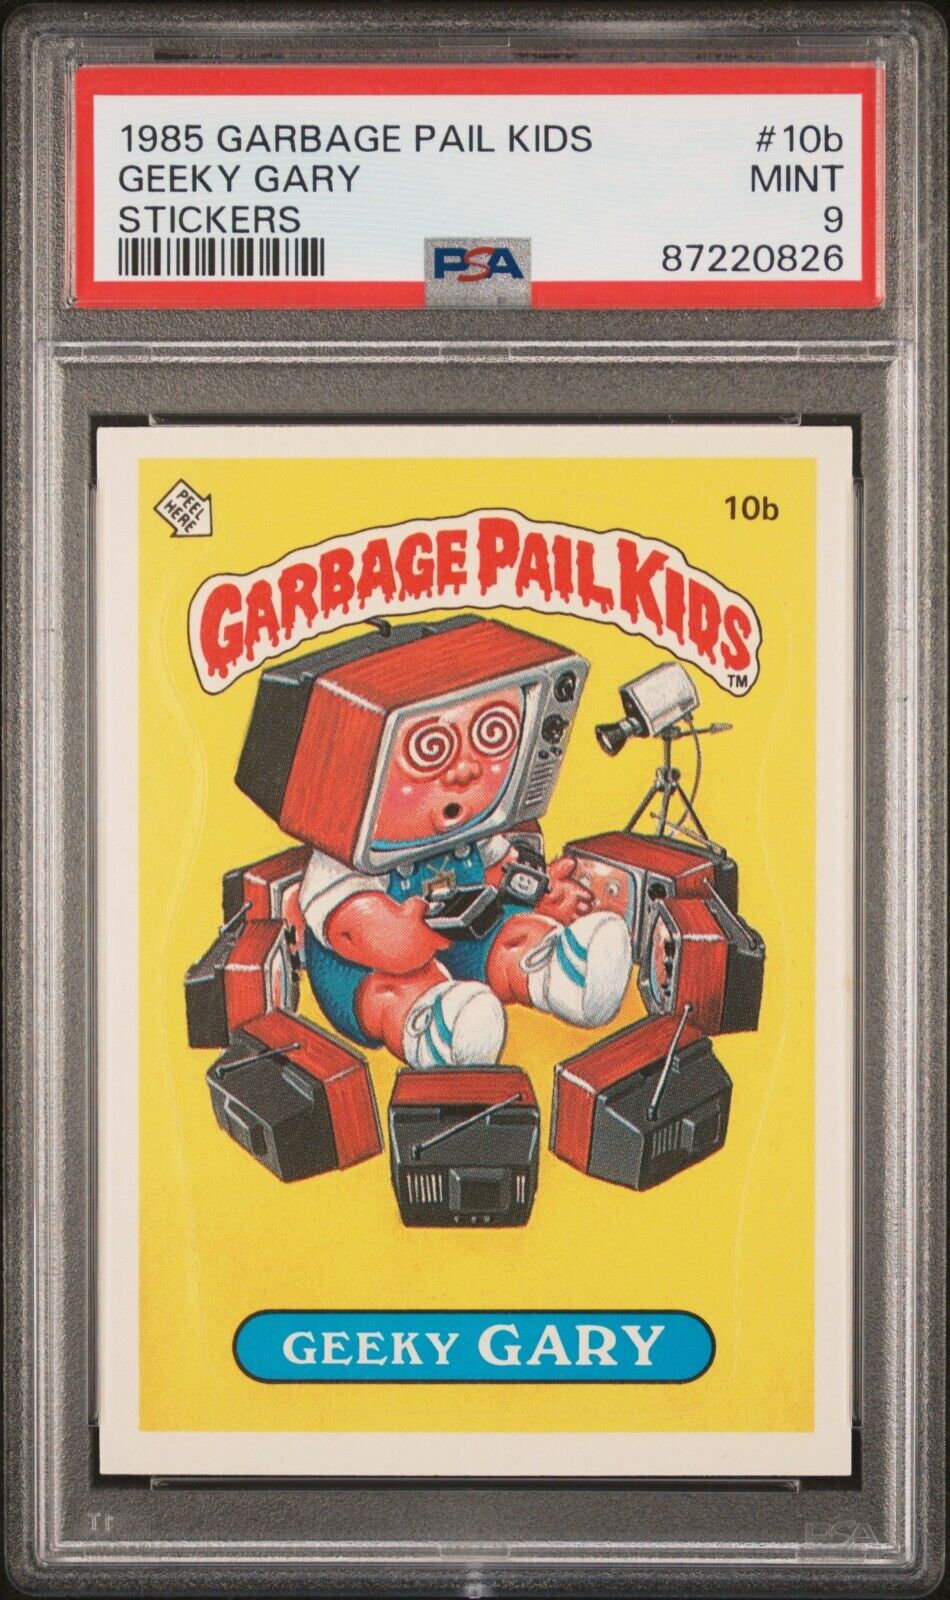 1985 Topps OS1 Garbage Pail Kids Series 1 Geeky Gary 10b Matte Card PSA 9 MINT